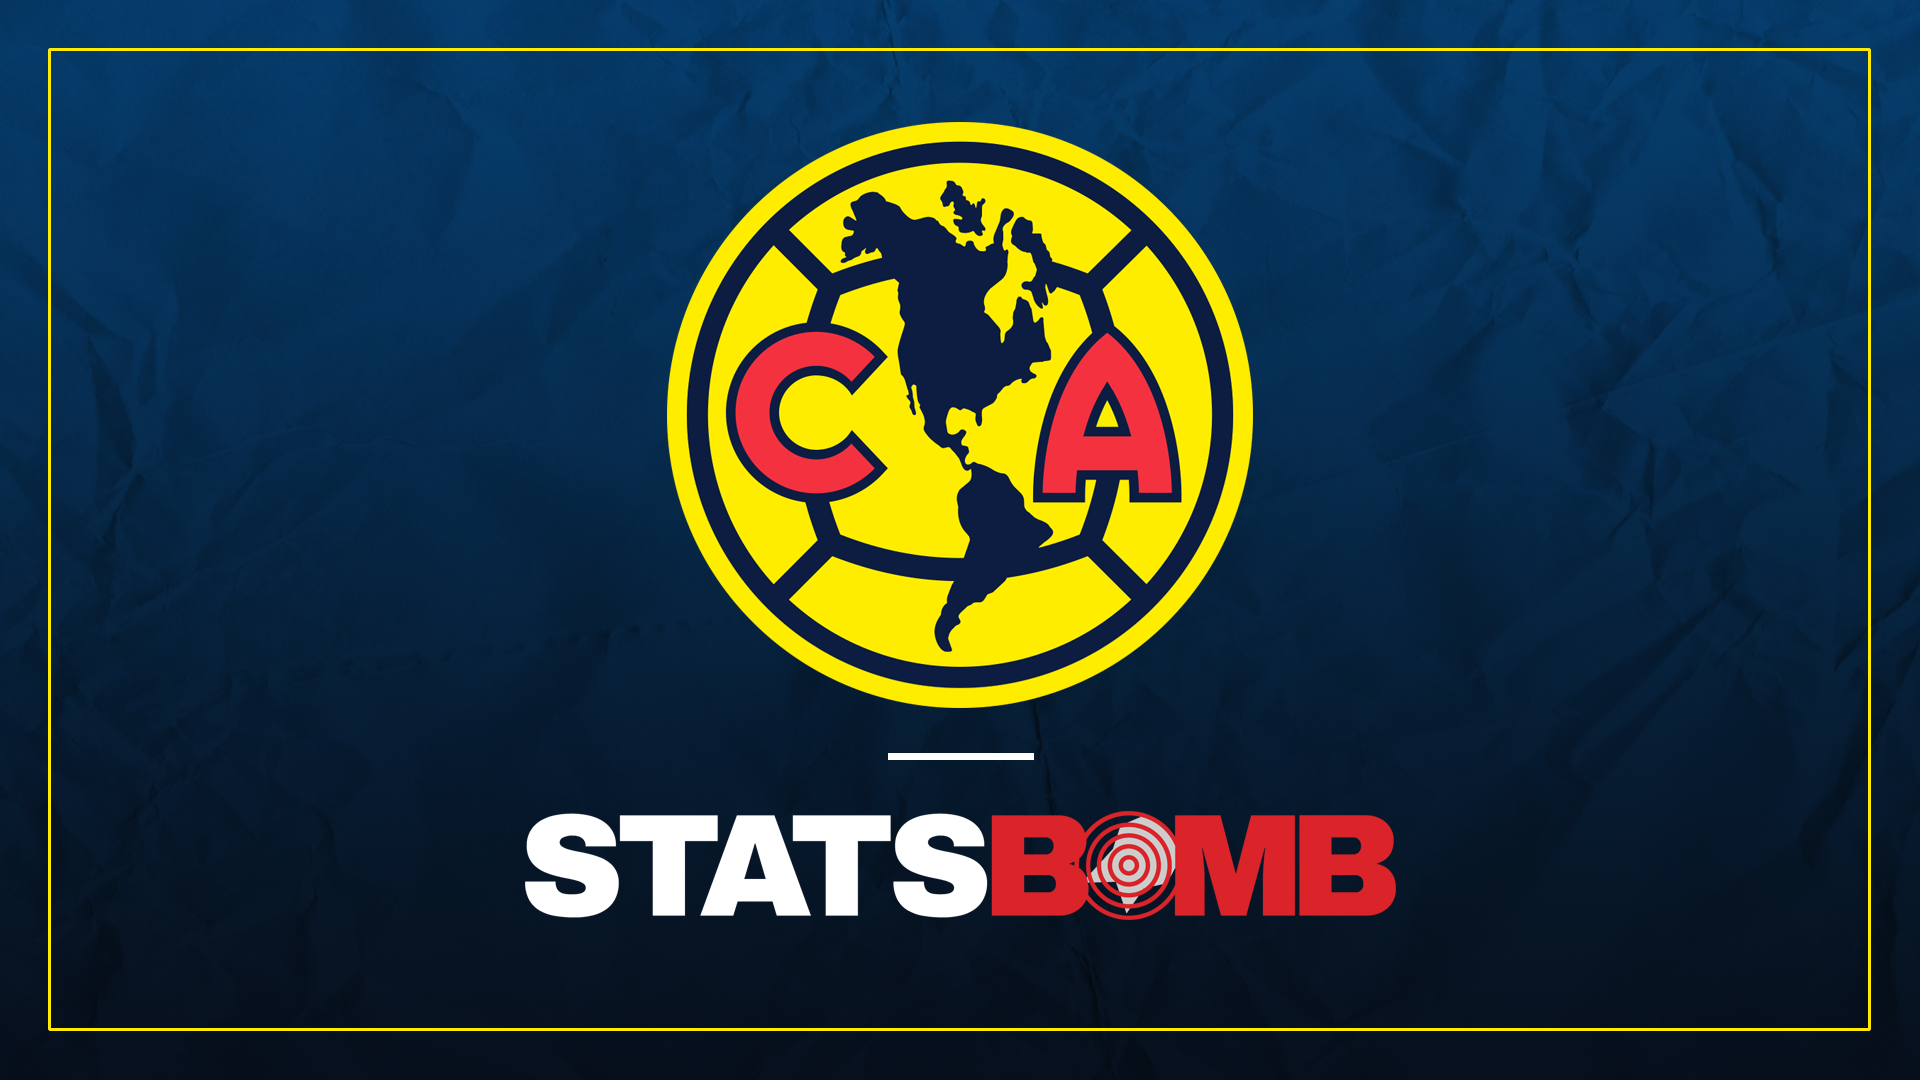 StatsBomb firma un acuerdo con el Club América, uno de los clubes más grandes de Latinoamérica